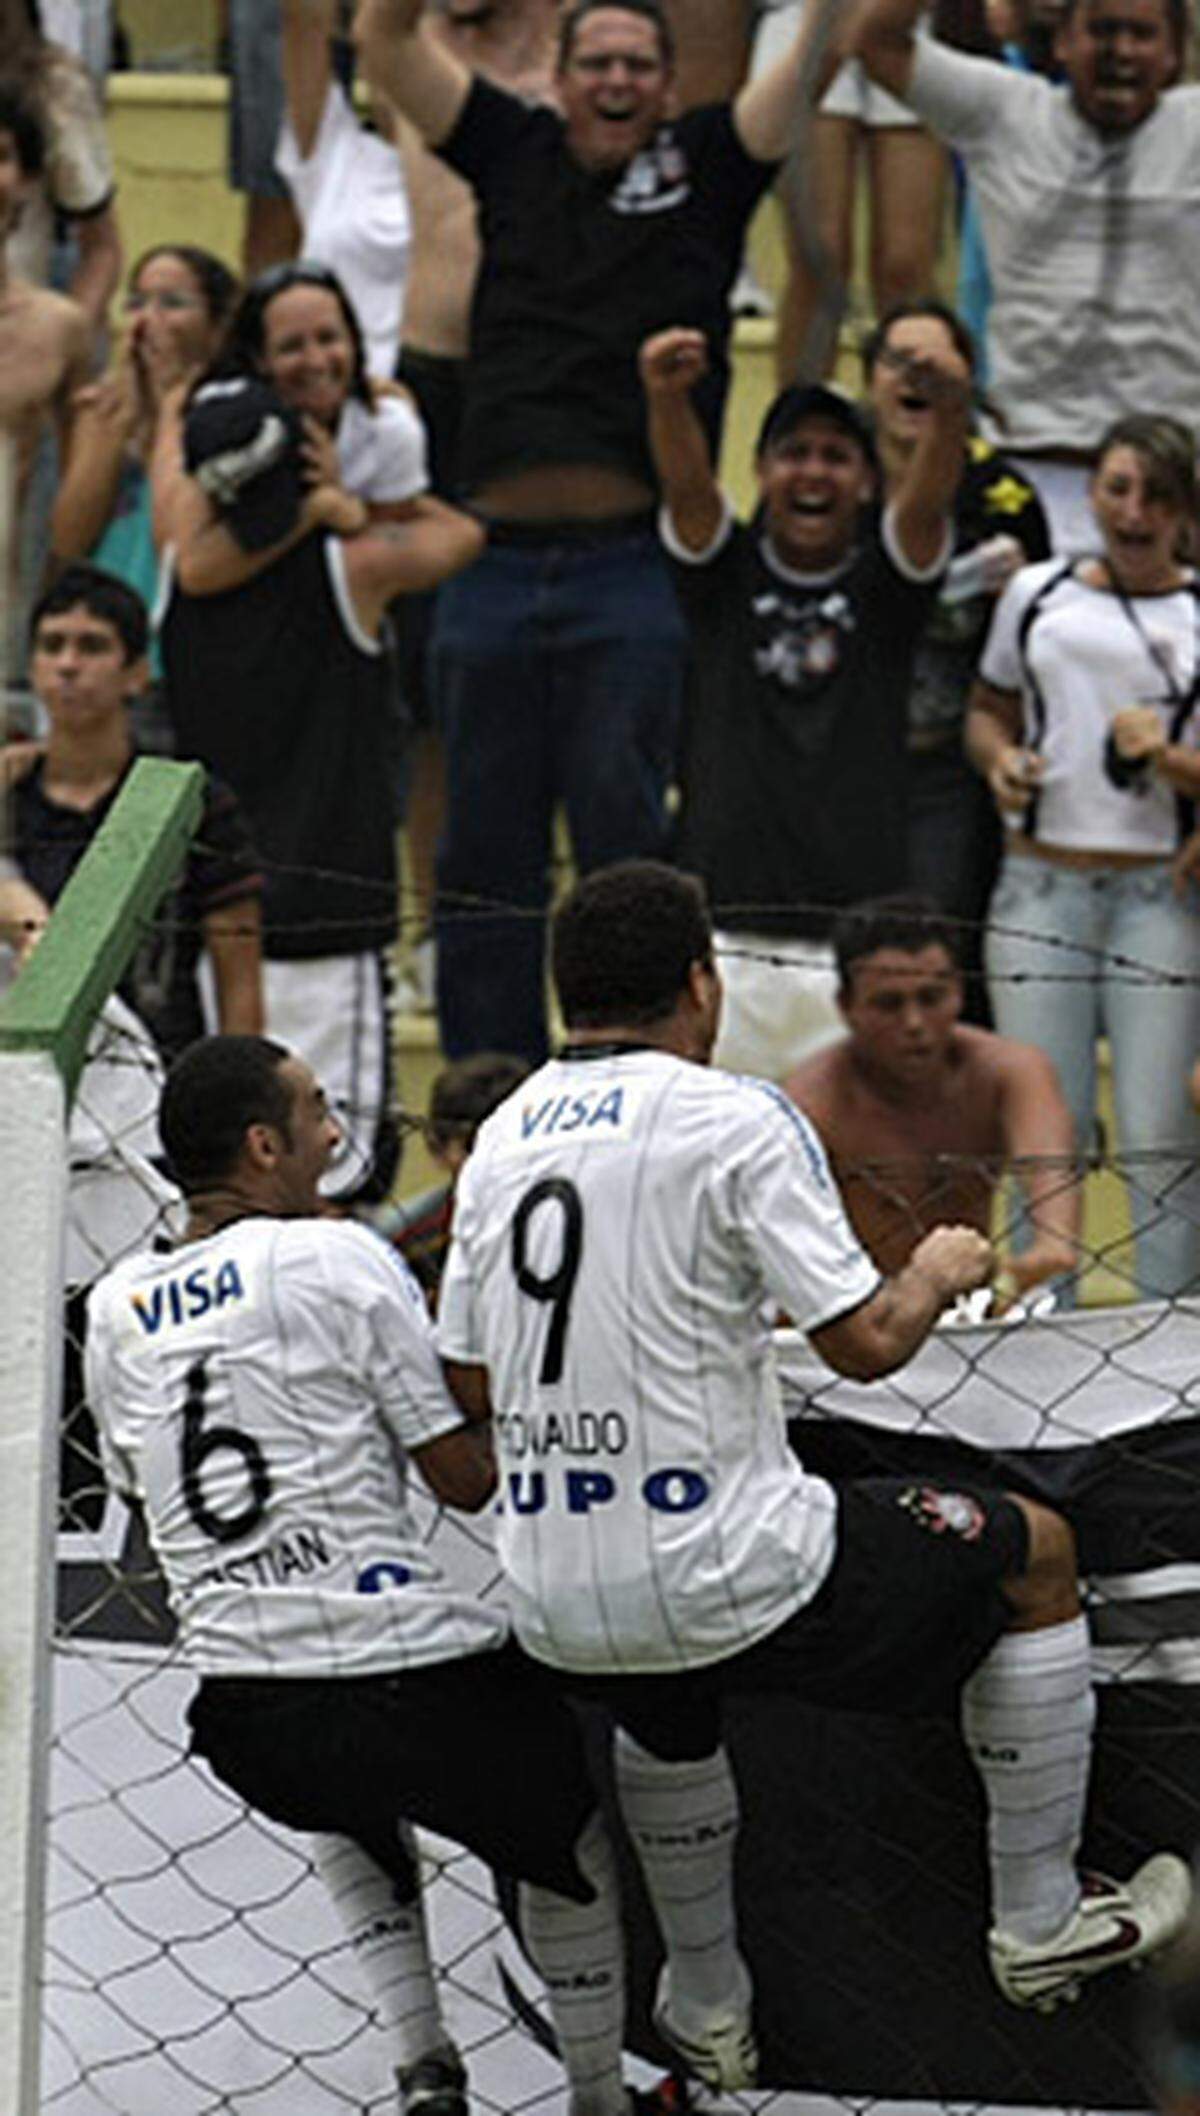 Nur vier Tage später erzielt Ronaldo sein erstes Tor für seinen neuen Klub: Der Brasilianer markiert für seinen Klub Corinthians Sao Paulo den vielumjubelten 1:1-Ausgleich gegen den Stadtrivalen Palmeiras. Ronaldo, der zur Halbzeit eingewechselt wird, hat in der 92. Minute seinen großen Auftritt: Nach einem Eckball trifft er per Kopf ins kurze Eck. Der 32-Jährige sprintet daraufhin zum Fanblock und lässt sich auf dem Zaun ausgiebig feiern. Dass er dafür vom Schiedsrichter Gelb sieht, ist ihm und den Fans herzlich egal.